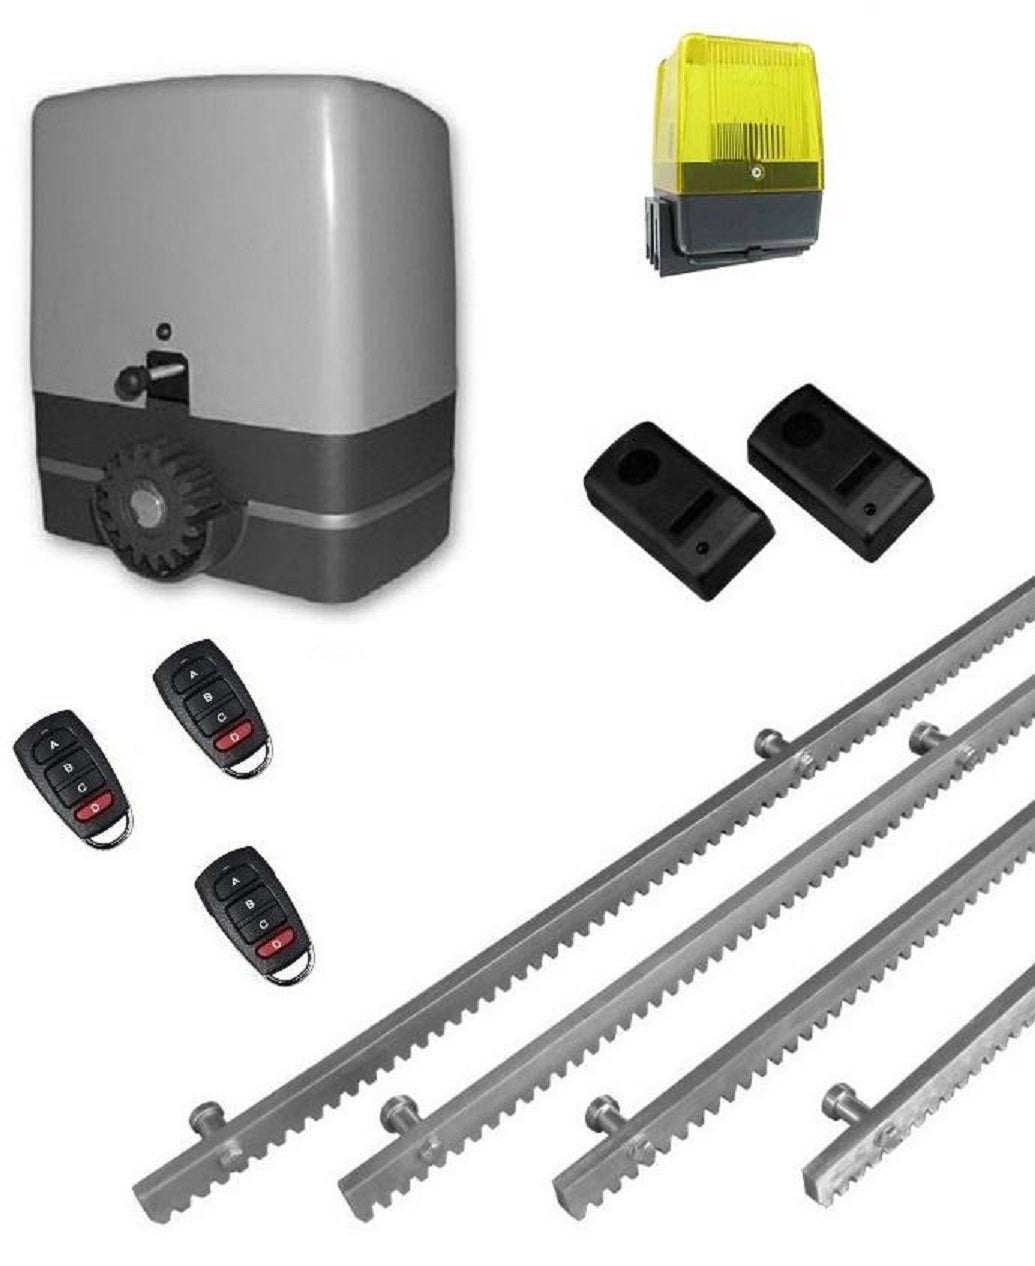 Σετ μοτέρ συρόμενης πόρτας VDS SL1000  (Kit-Complete) S με ενσωματωμένο πινακοδέκτη, 4m μεταλλική κρεμαγιέρα, 1 ζευγάρι φωτοκύτταρα ασφαλείας, 1 φανό και 3 τηλεχειριστήρια